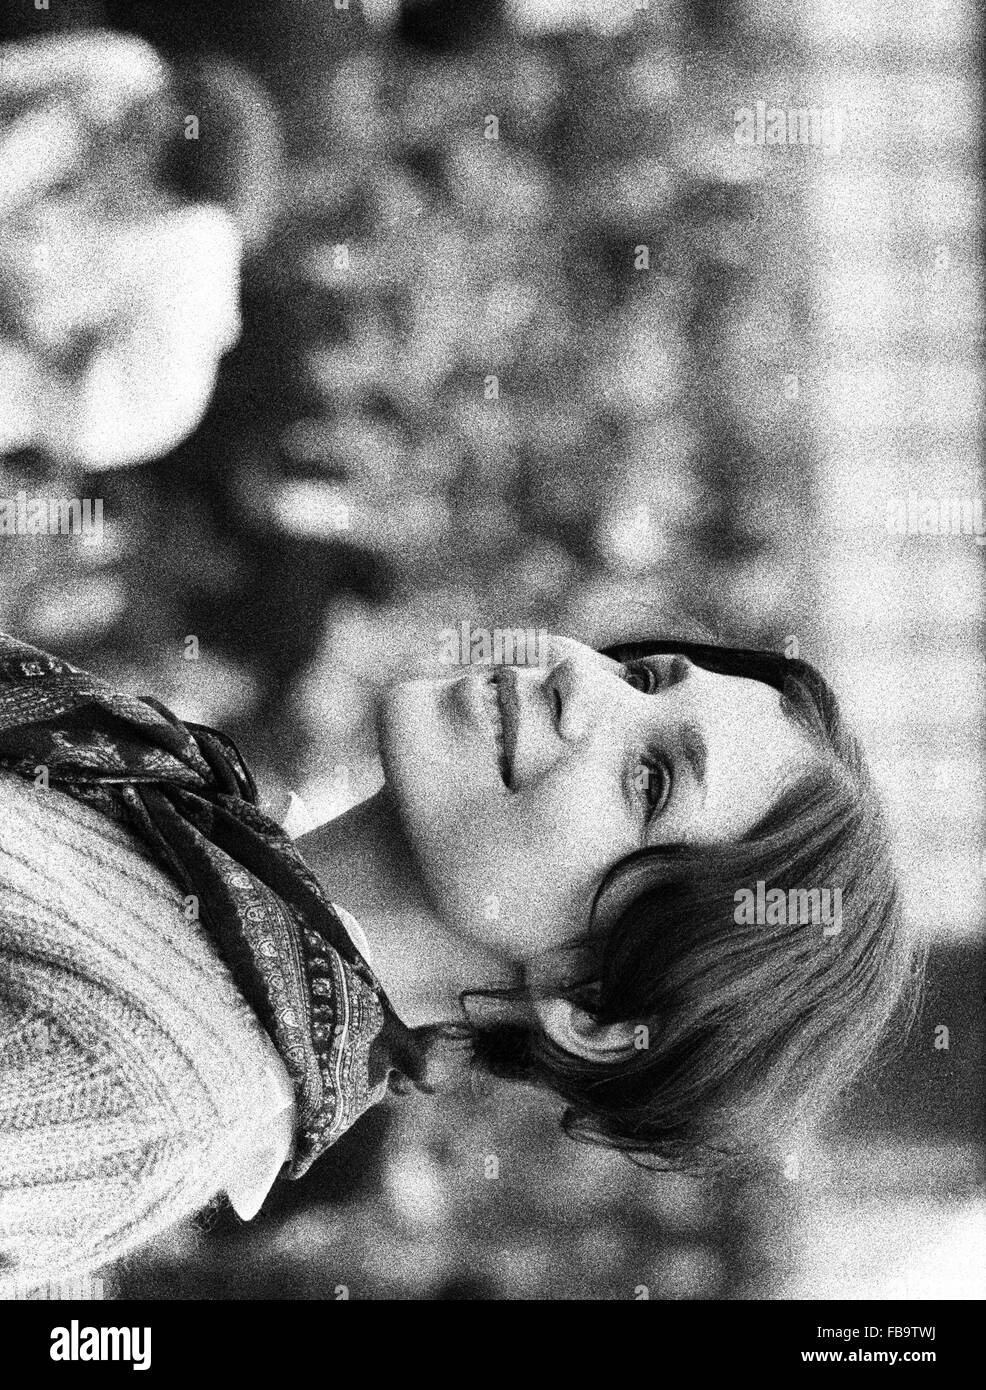 Ereignisse von 1968. -1968 Veranstaltungen. -Junge, lächelnde Frau während der Ereignisse des Jahres 1968.   -Philippe Gras / Le Pictorium Stockfoto